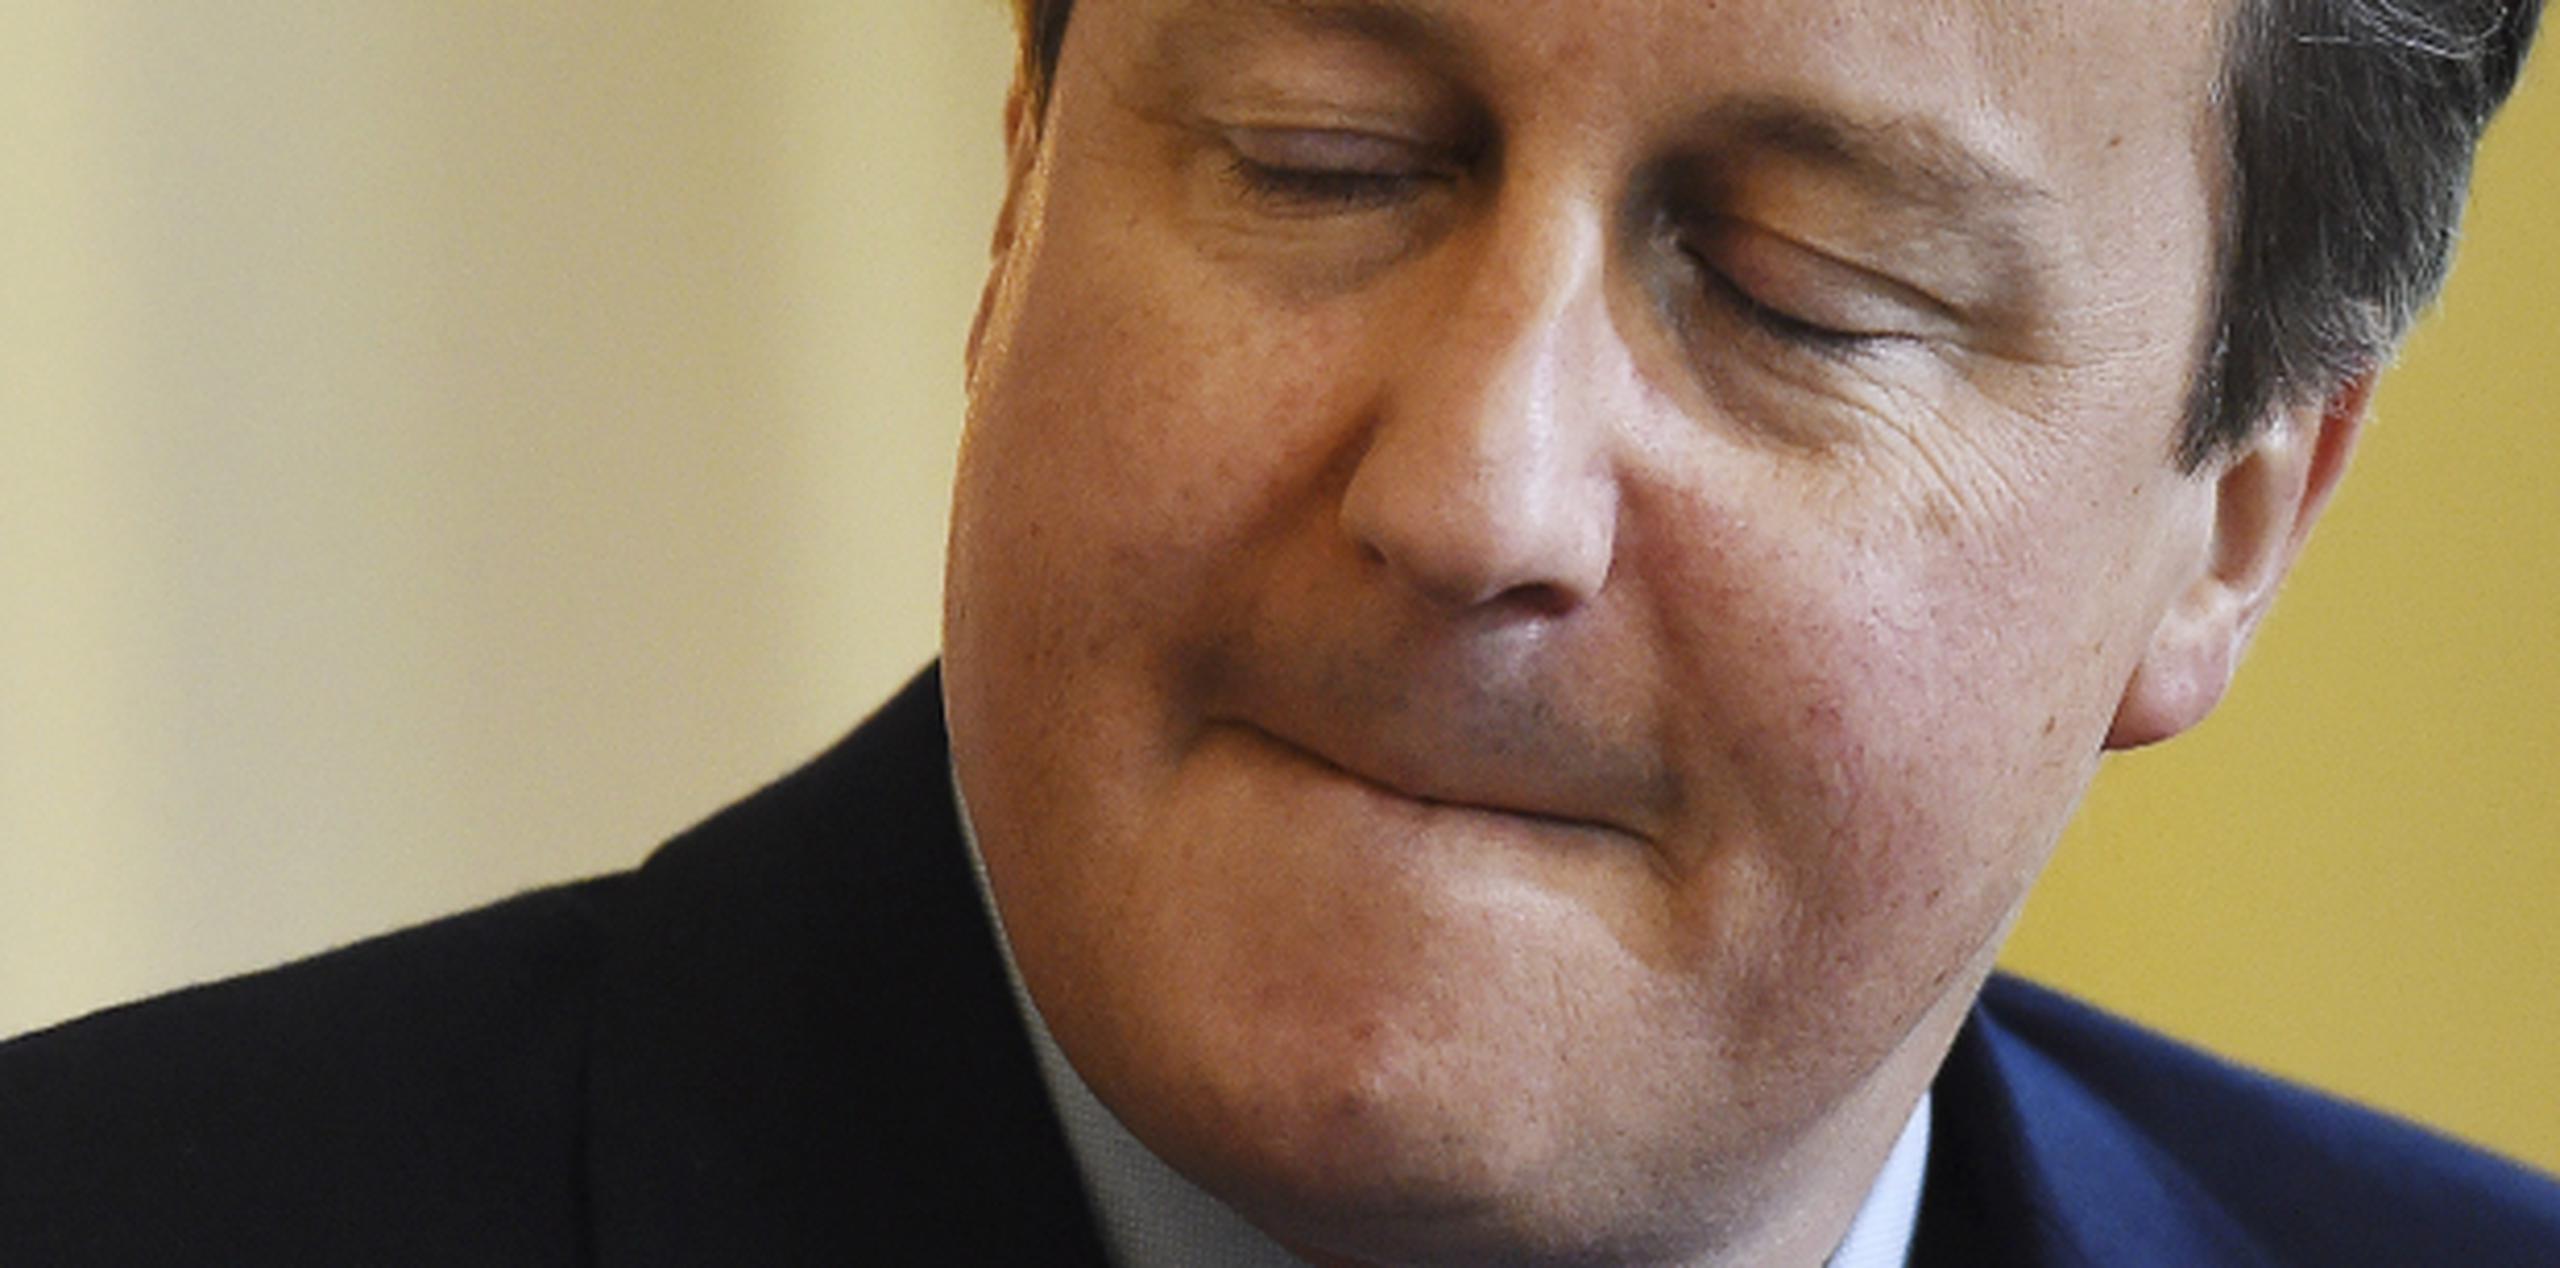 Según el libro, David Cameron participó en un "ritual de iniciación" en el que "tuvo que introducir una parte de su anatomía en la boca de un cerdo muerto".
(EFE)